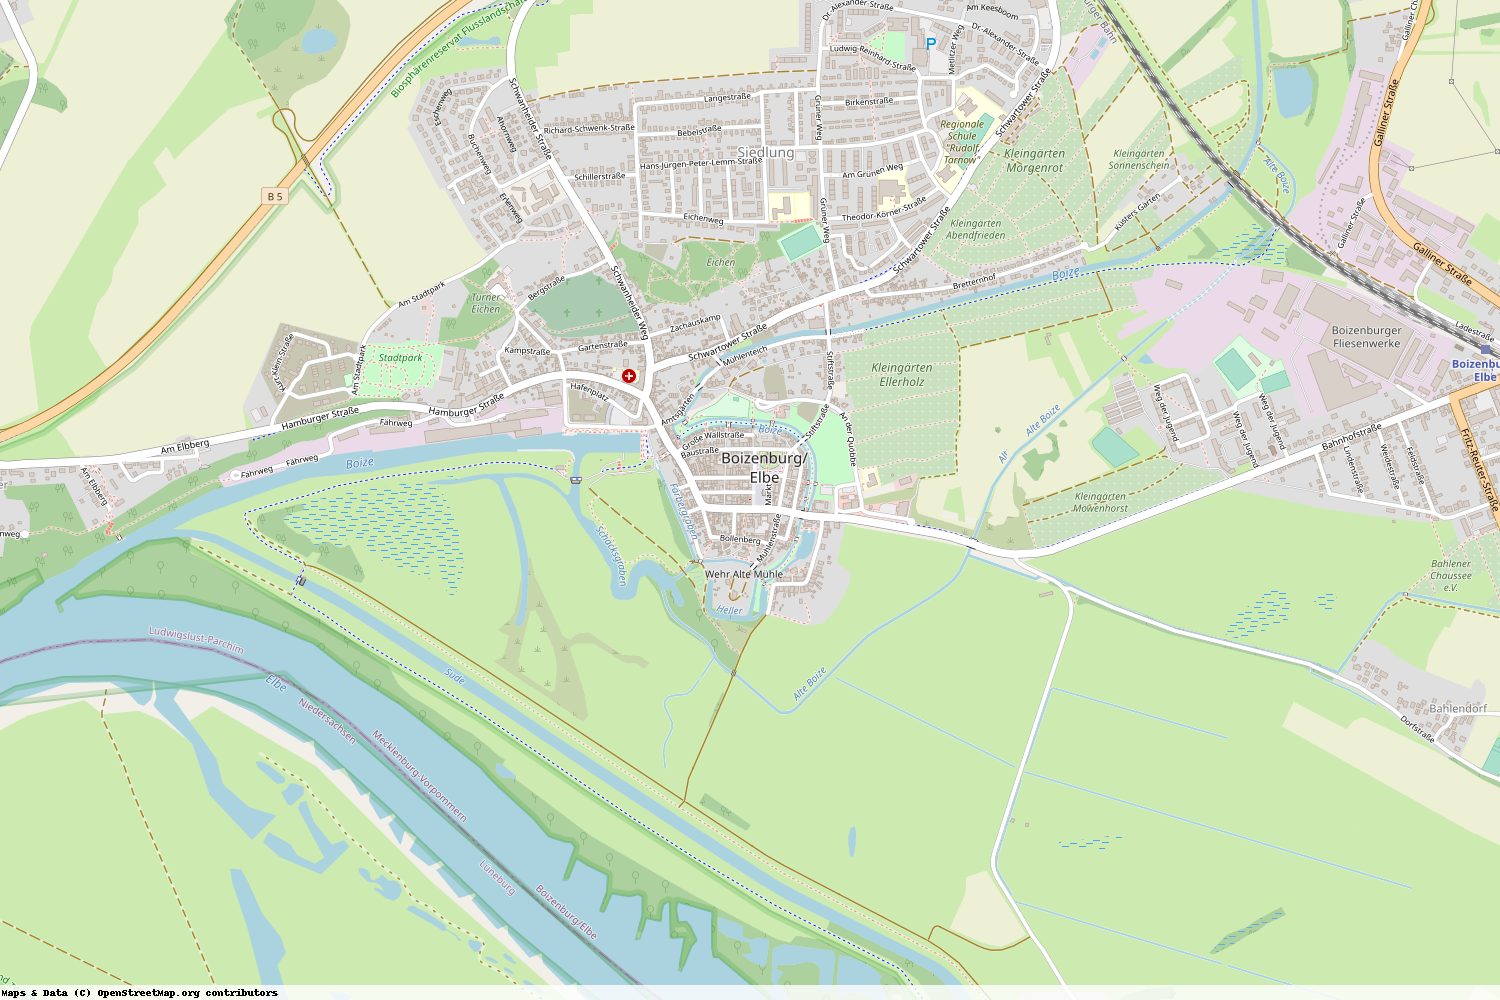 Ist gerade Stromausfall in Mecklenburg-Vorpommern - Ludwigslust-Parchim - Boizenburg-Elbe?